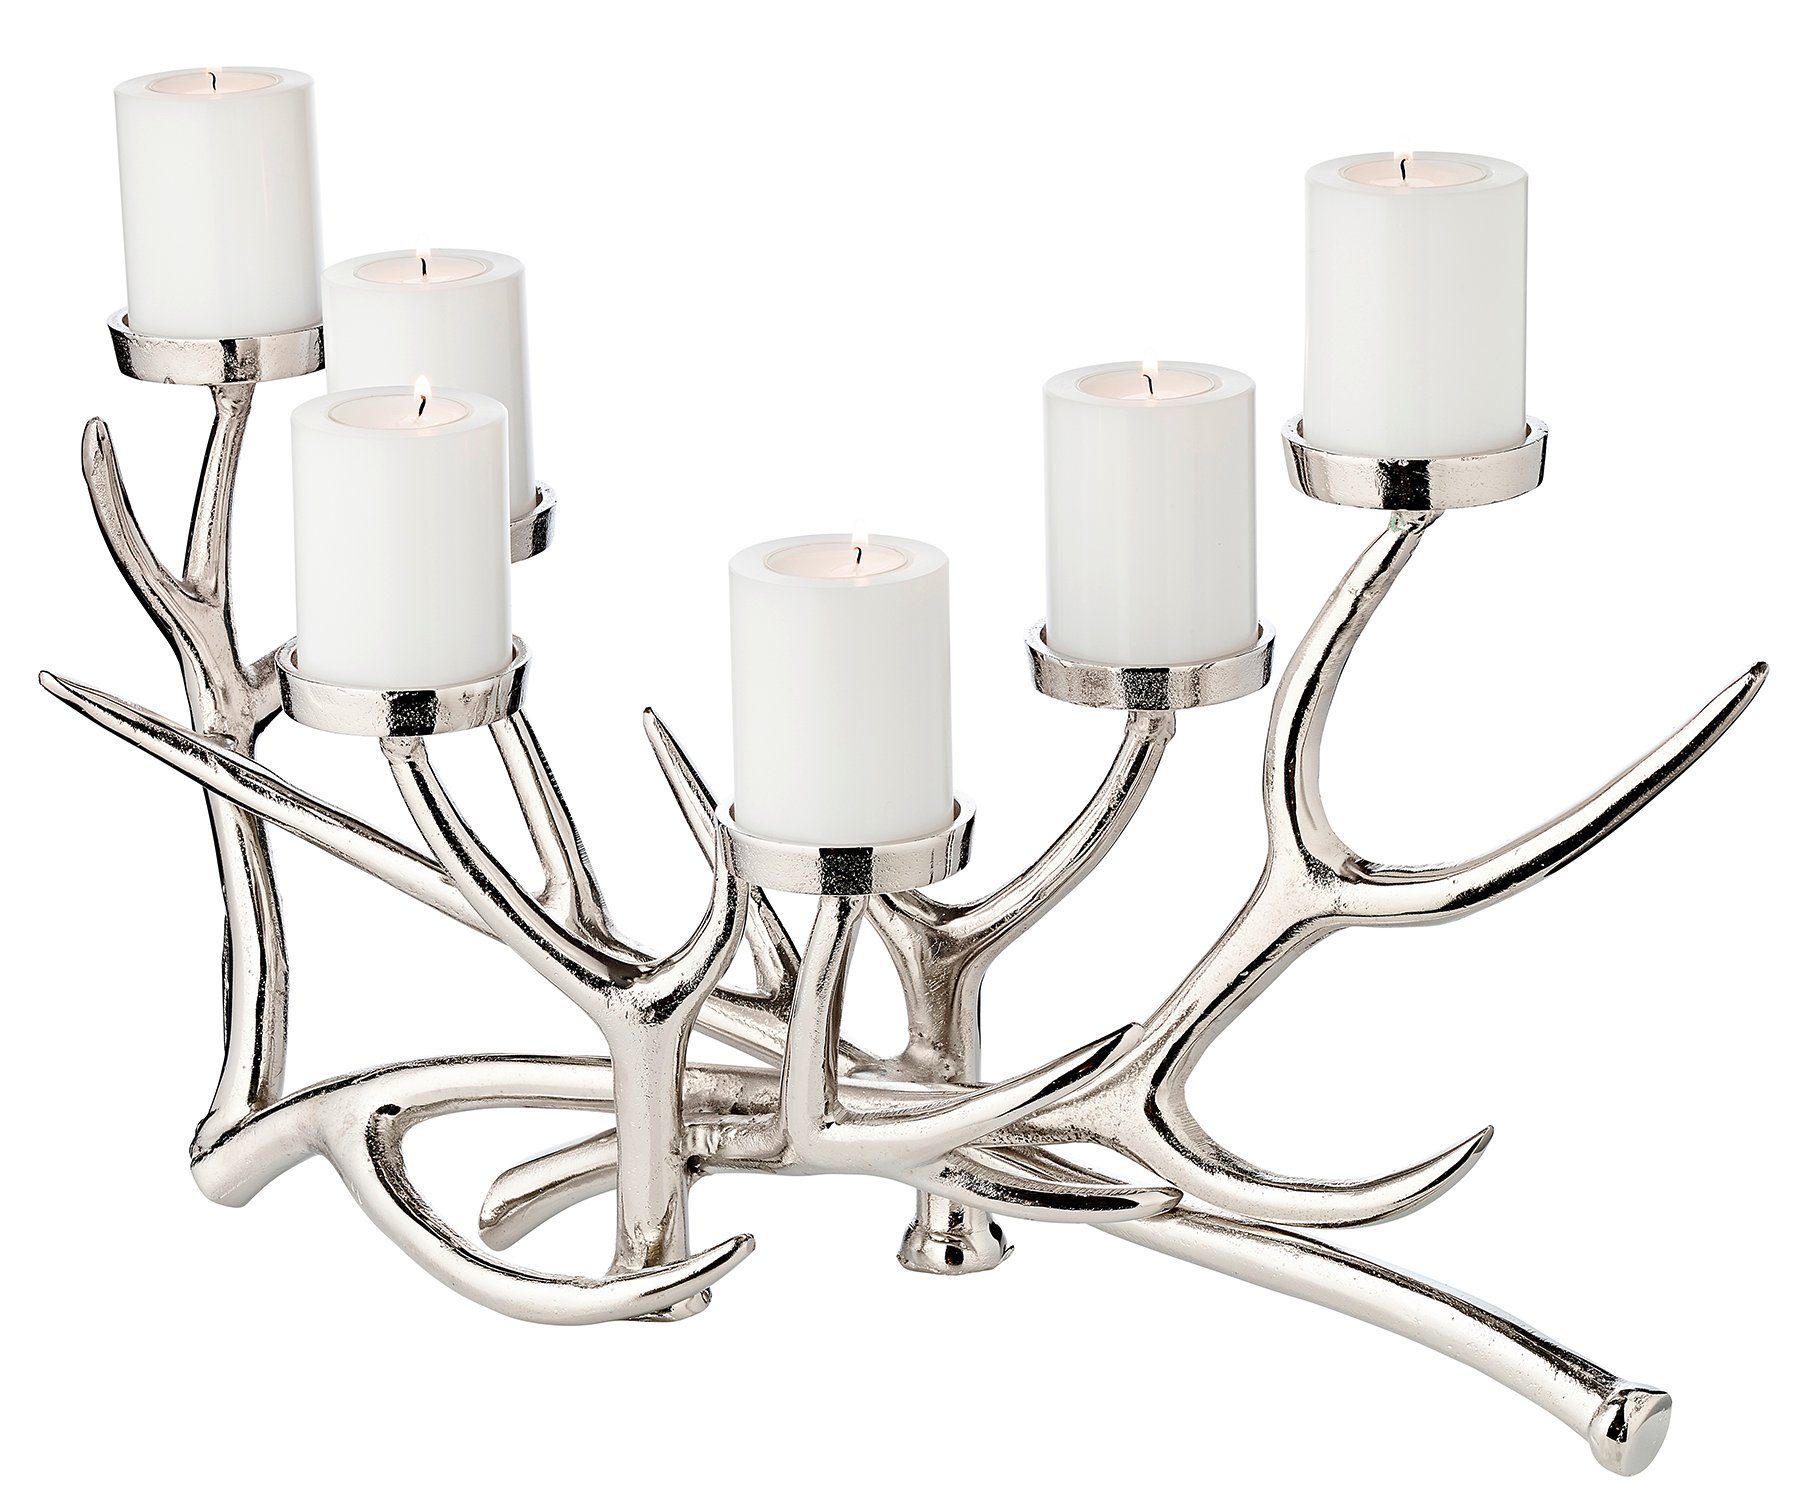 EDZARD Adventskranz James, Höhe 27 cm, Kerzenleuchter Geweih-Design, aus vernickeltem Aluminium in Silber-Optik, Adventskranz für Stumpenkerzen